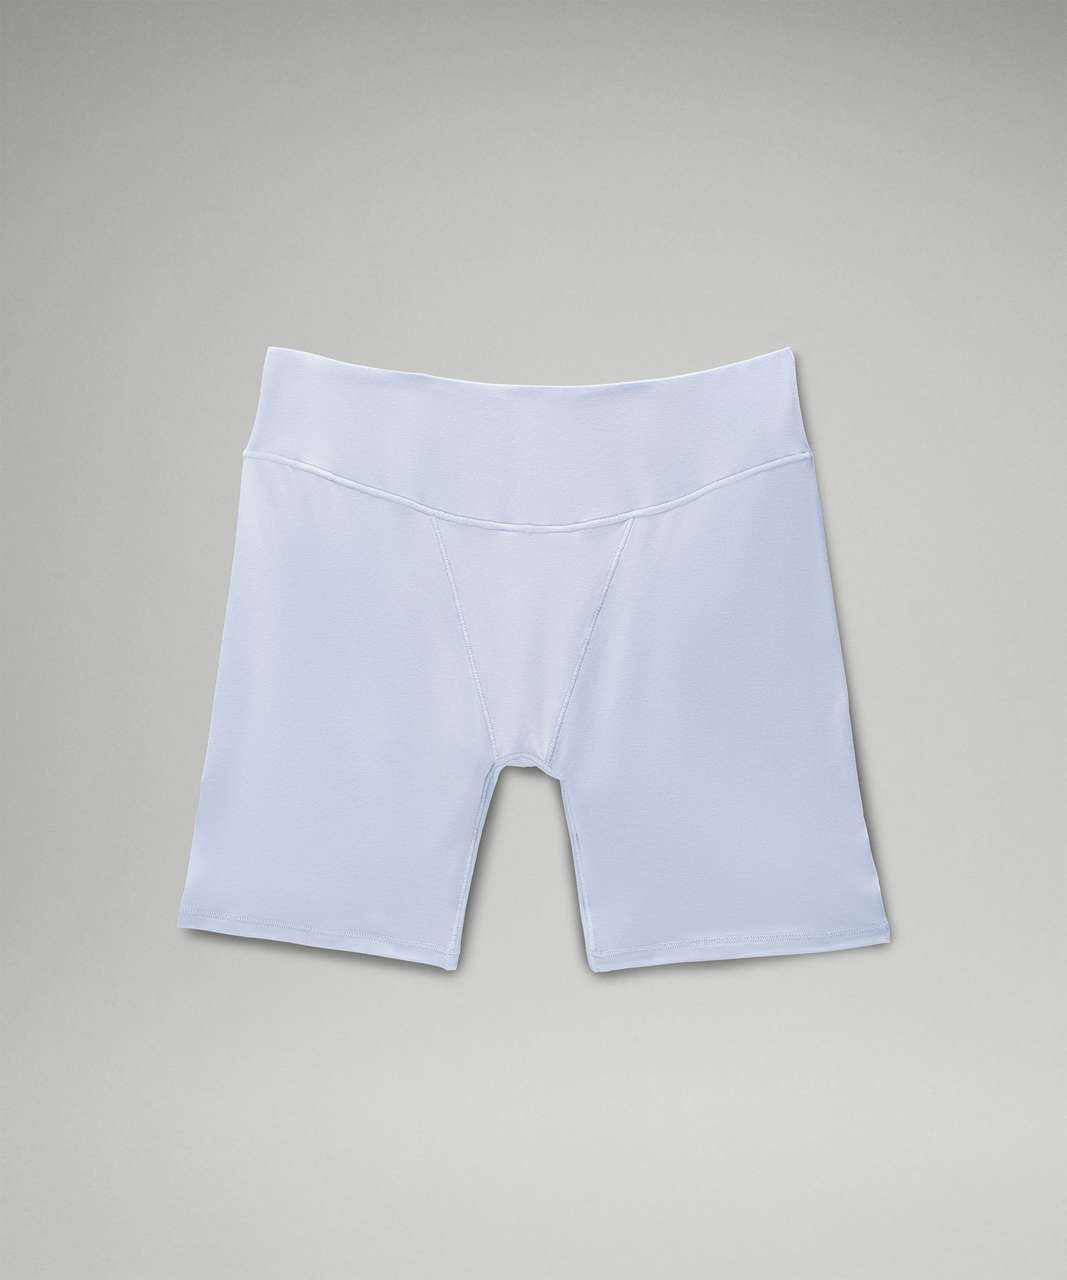 Lululemon UnderEase Super-High-Rise Shortie Underwear 5" - Blue Linen